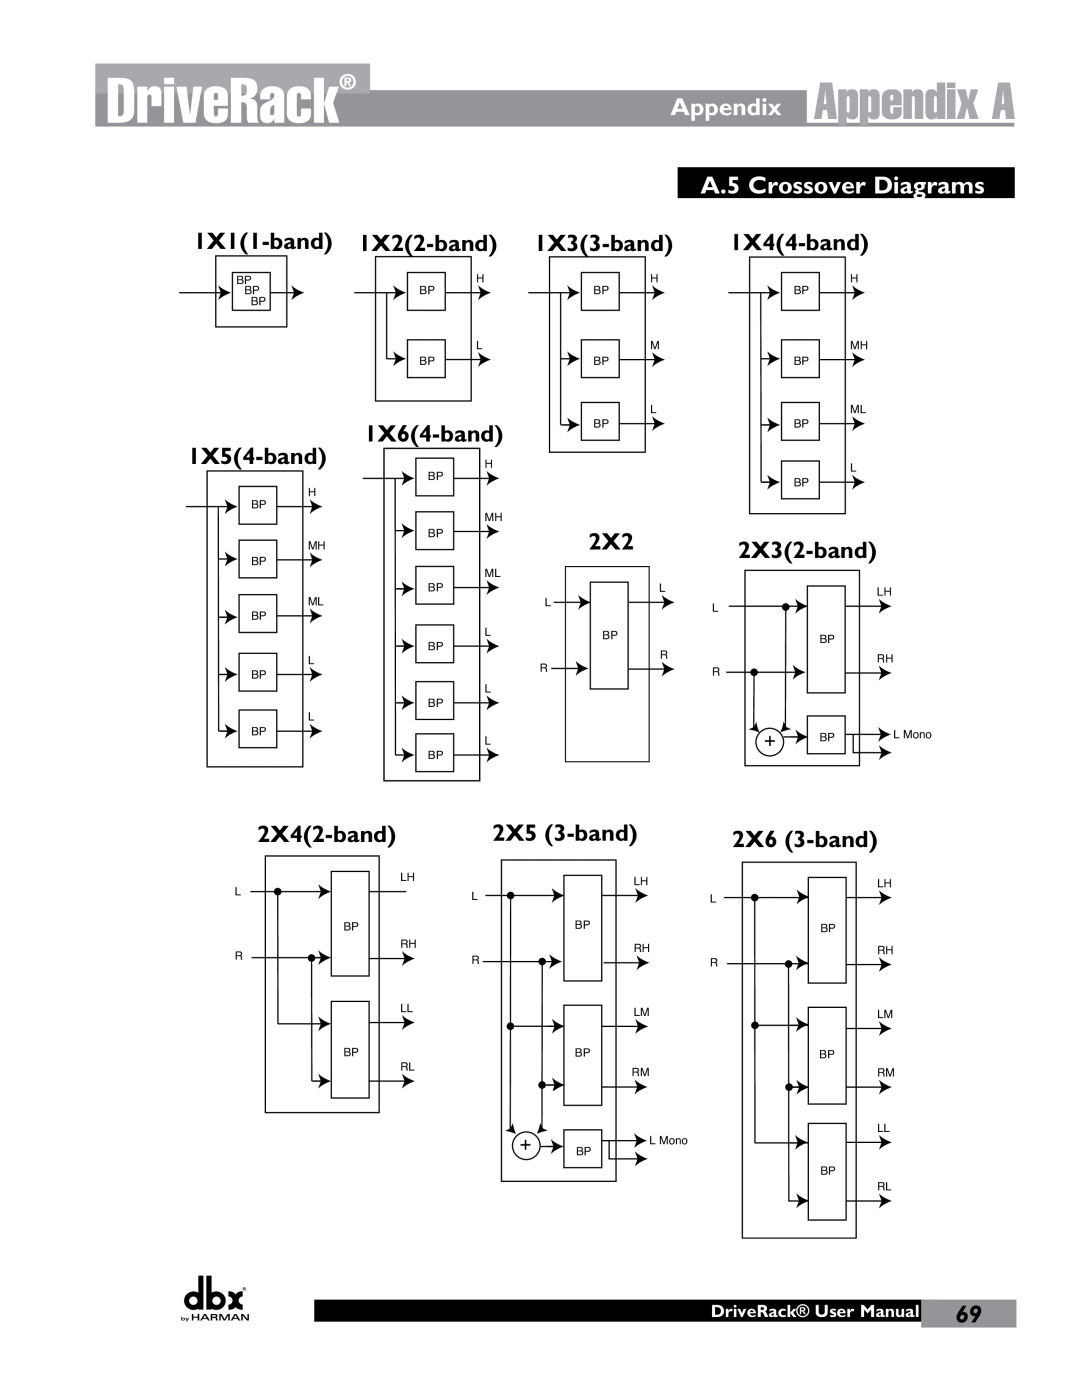 JBL 260 DriveRack, Appendix A, A.5 Crossover Diagrams, 1X11-band 1X22-band, 1X33-band 1X44-band, 1X54-band, 1X64-band 